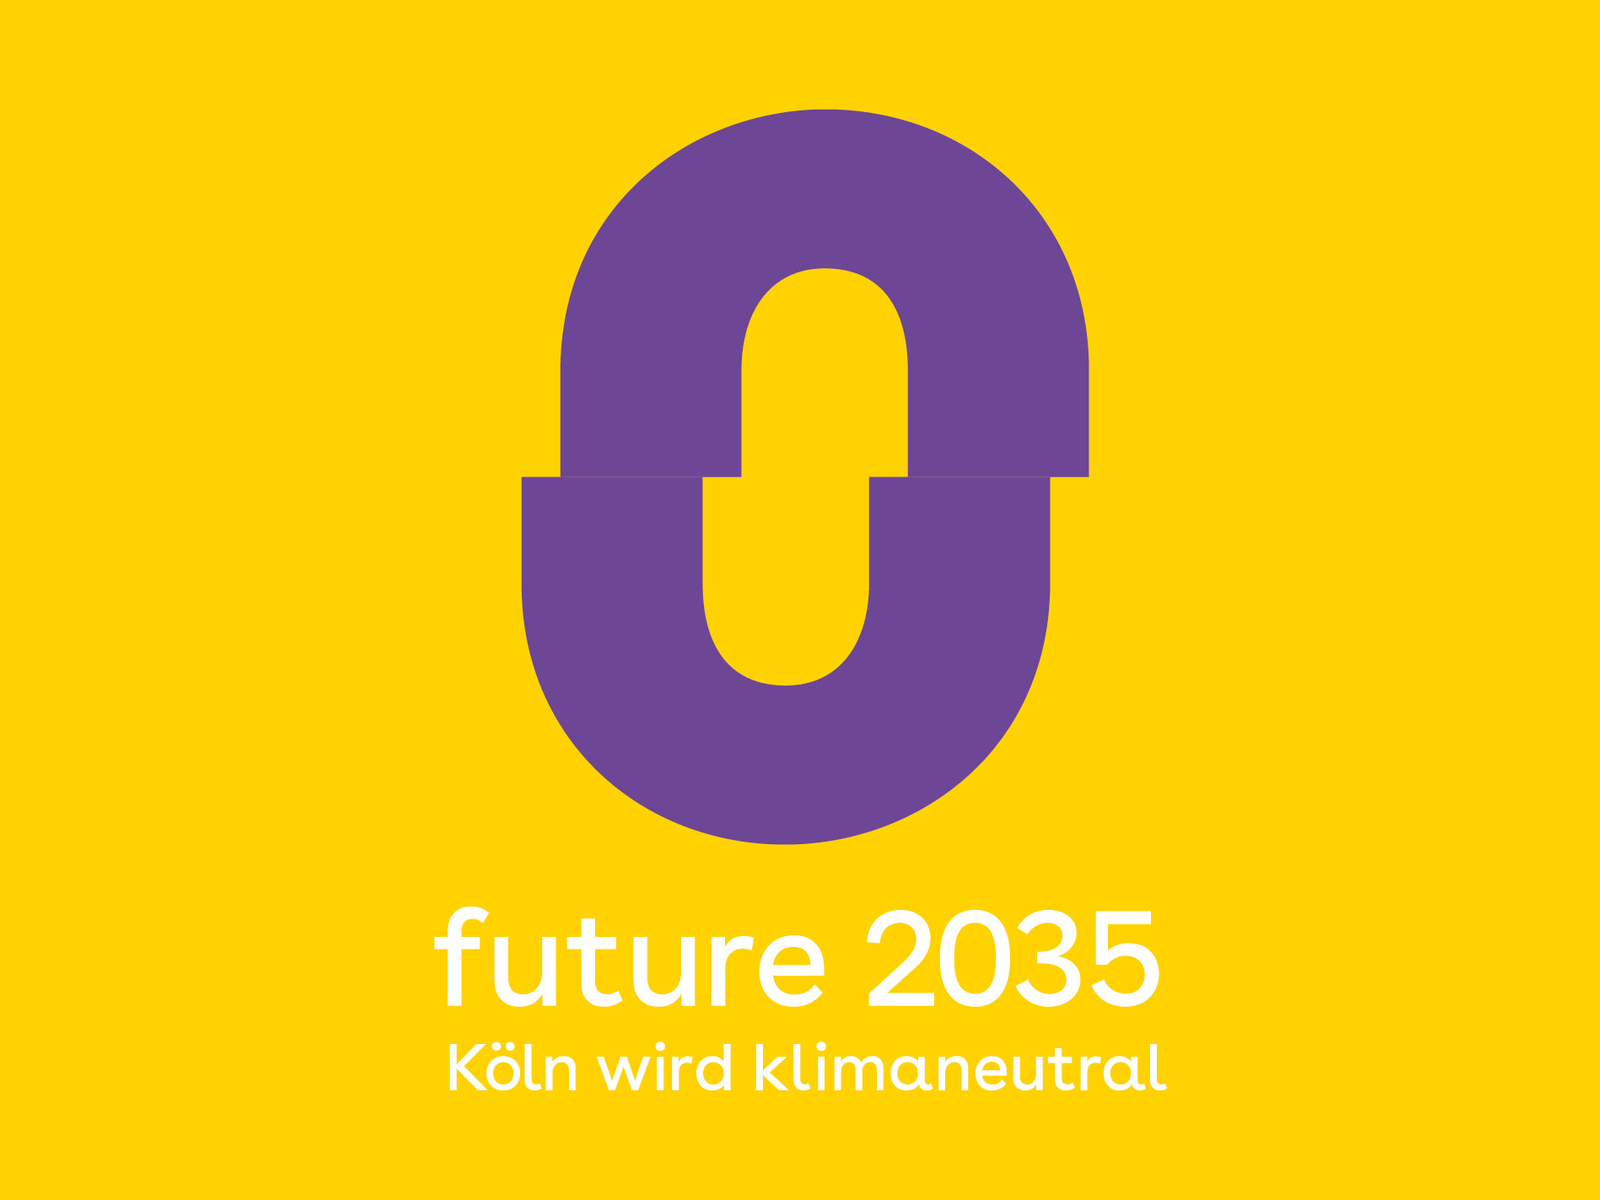 Große violette Null auf gelbem Hintergrund. Darunter weiterer Text "future 2035. Köln wird klimaneutral".